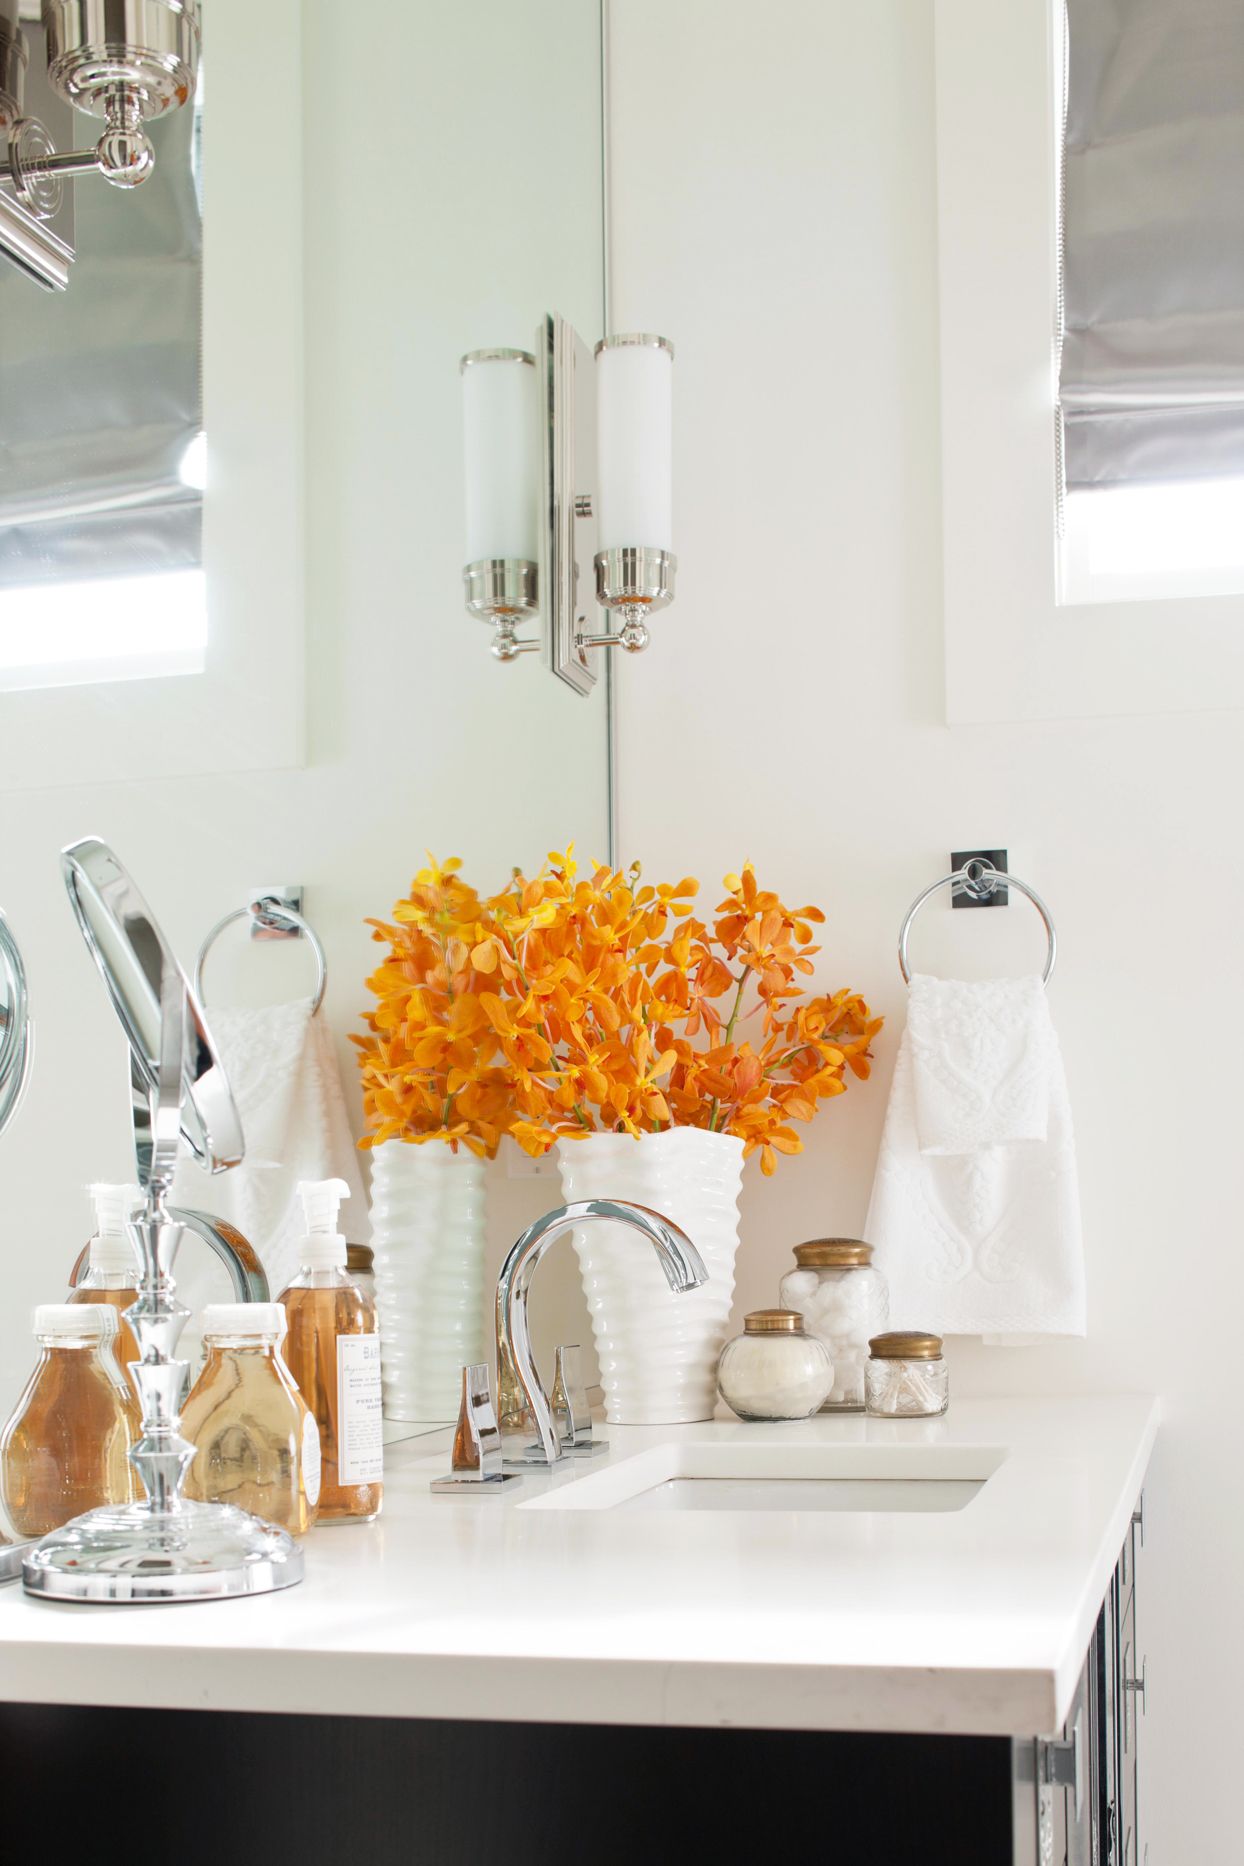 Dành thời gian sắp xếp lại khu vực bồn rửa và thêm vào những điểm nhấn màu sắc như hoa tươi màu cam giữa căn phòng toàn sắc trắng sẽ làm góc nhỏ bừng sáng lên.